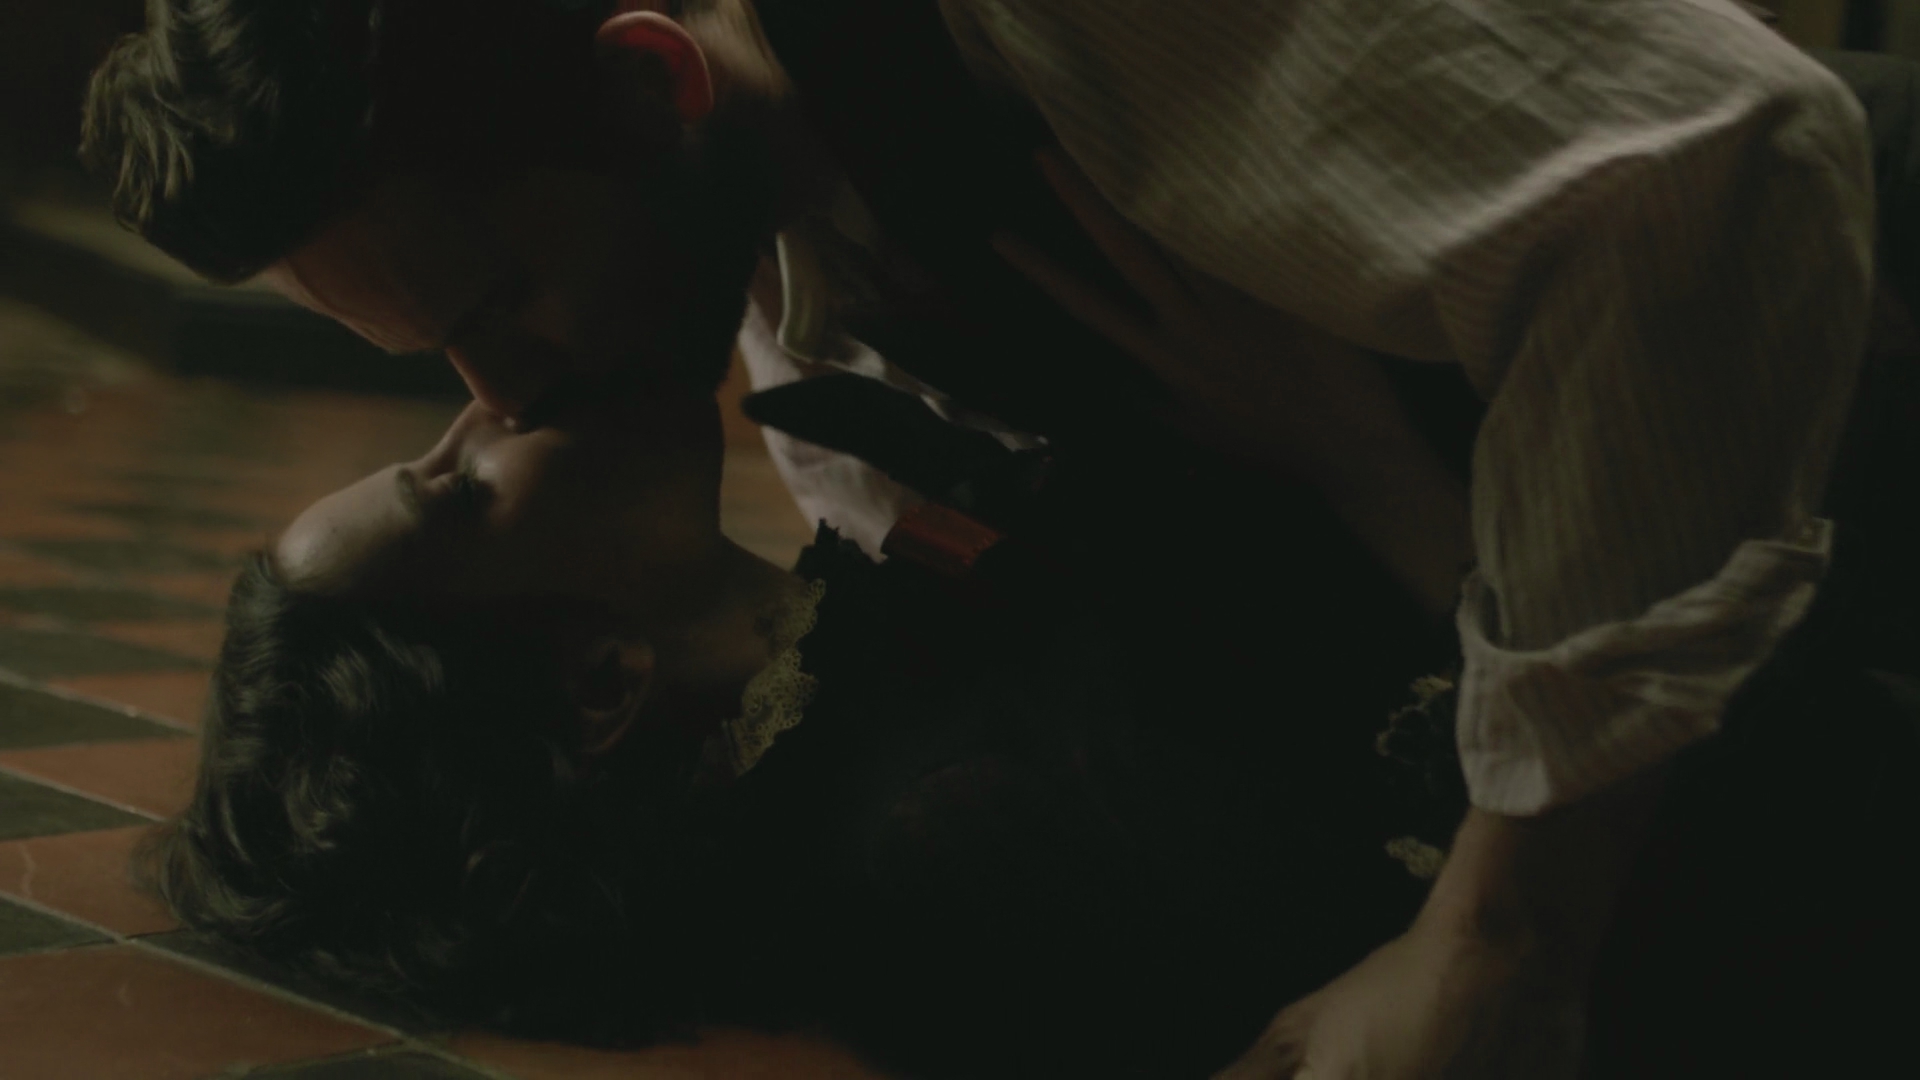 Eva Green - Penny Dreadful (2016) S03E06 "Sex Scene" HD 1080p. 